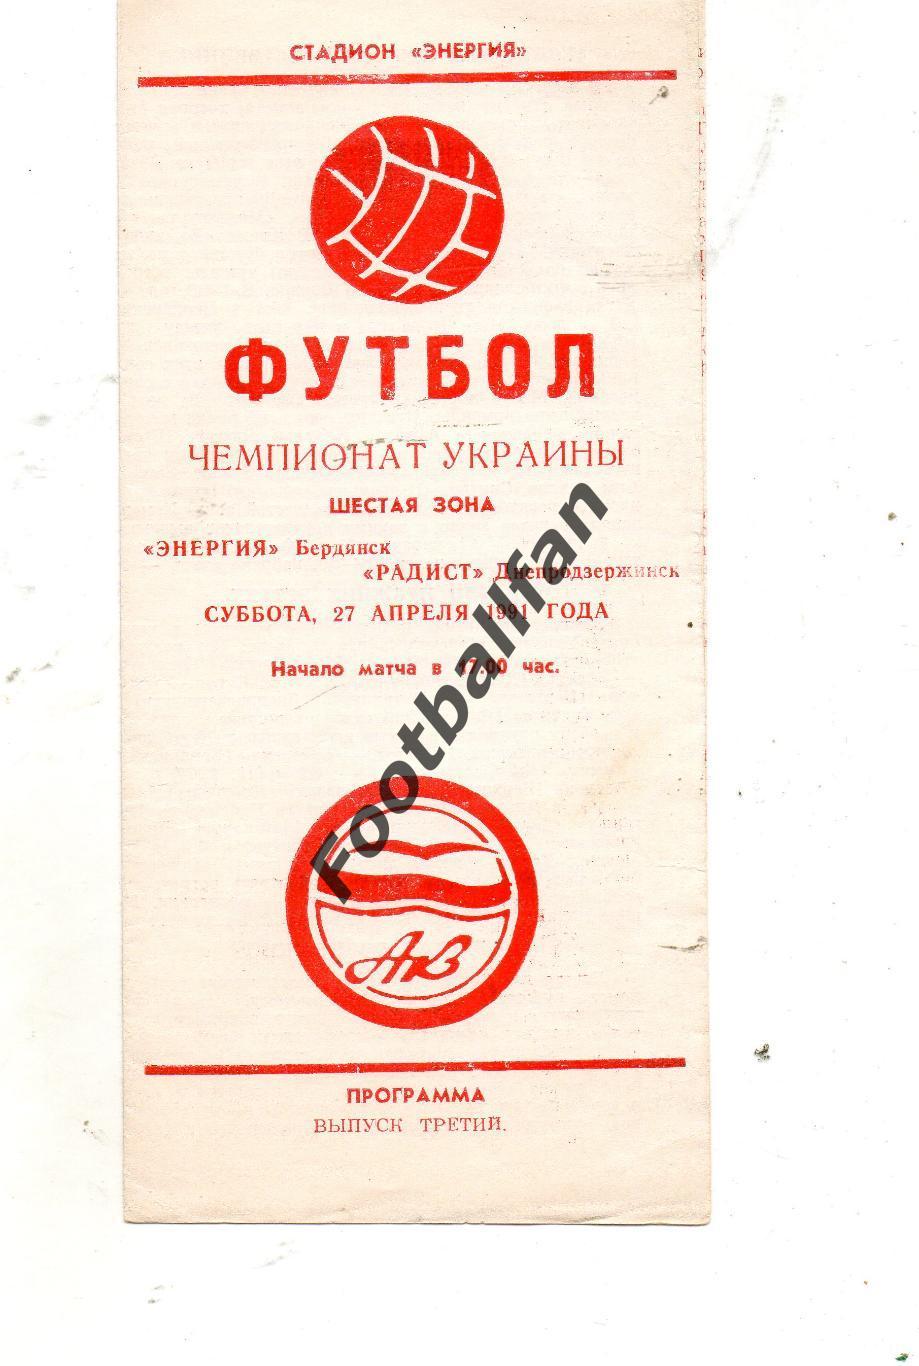 Энергия Бердянск - Радист Днепродзержинск 21.04.1991